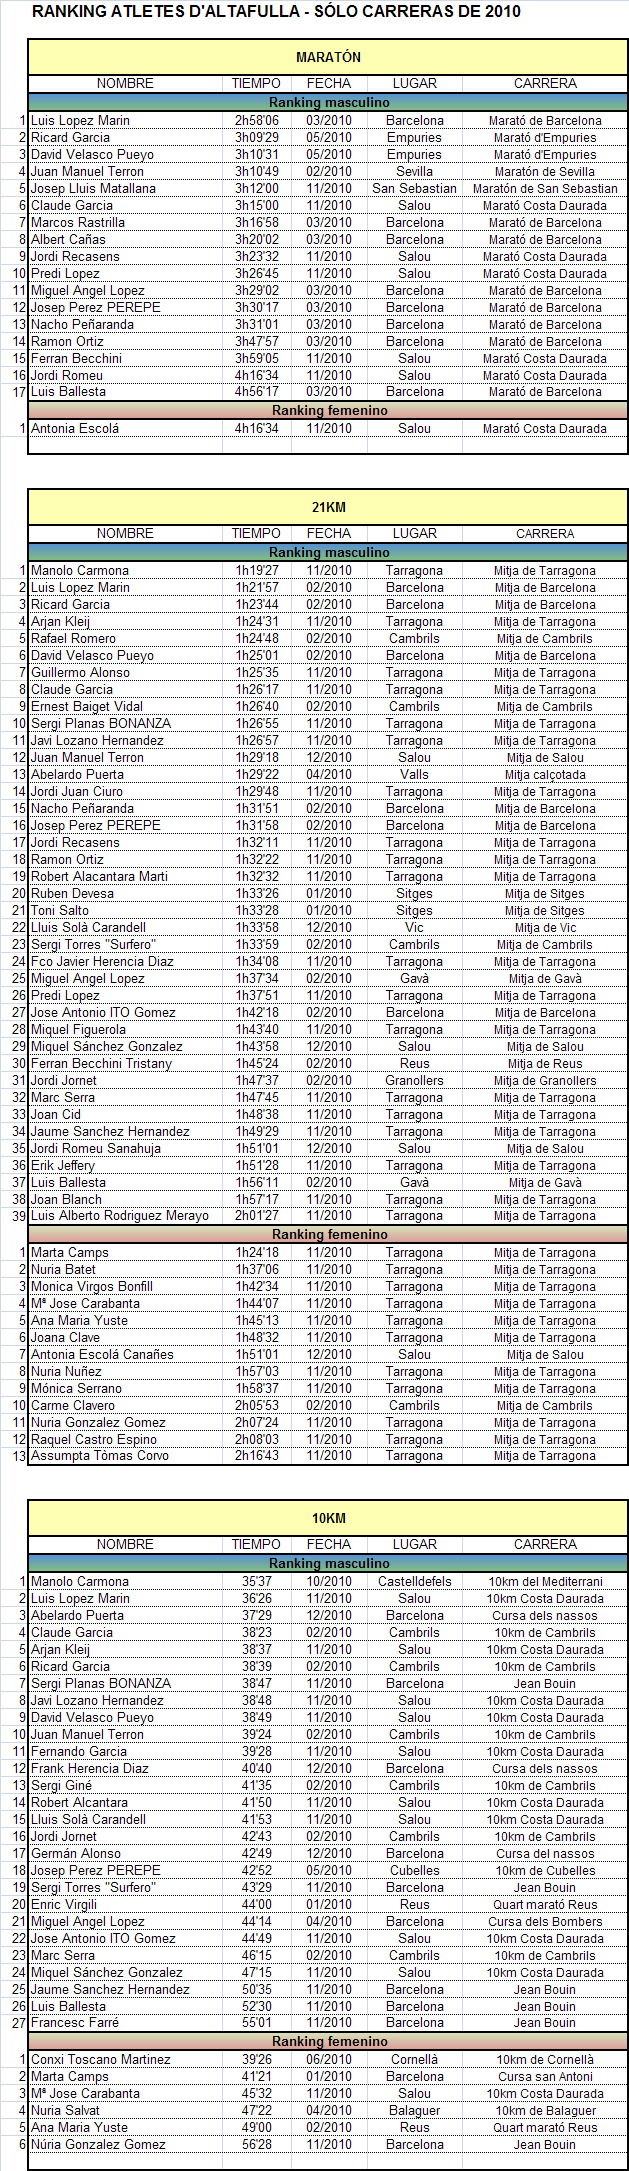 Ranking 2010 atletes d'altafulla